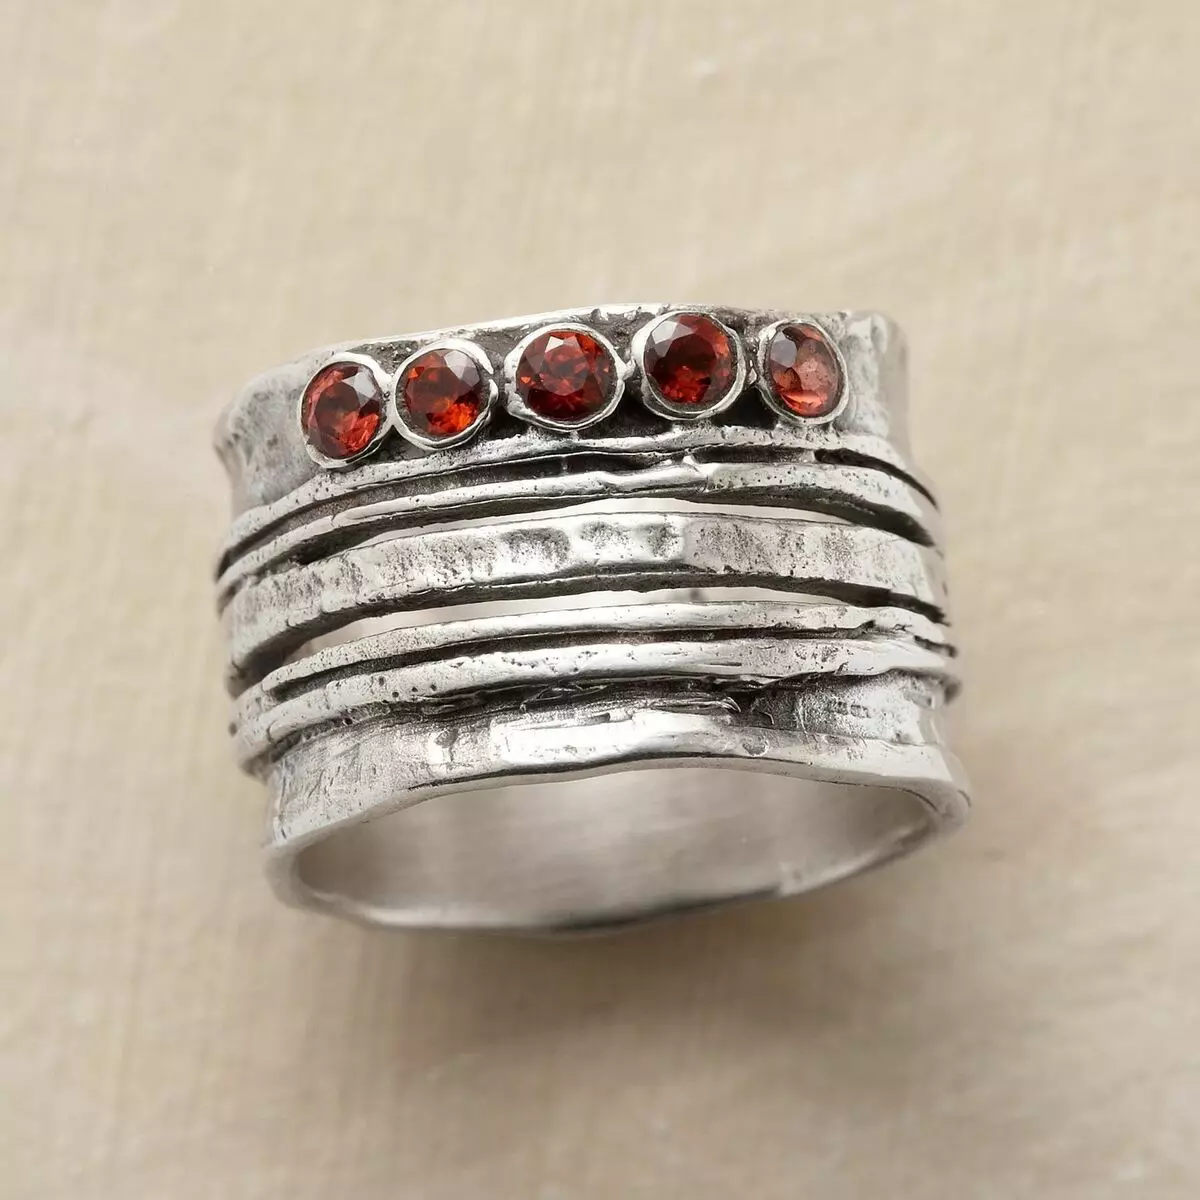 Izraelský stříbro: Přehled Izraelských stříbrných šperků, výrobků s přírodními a dalšími kameny 23597_15